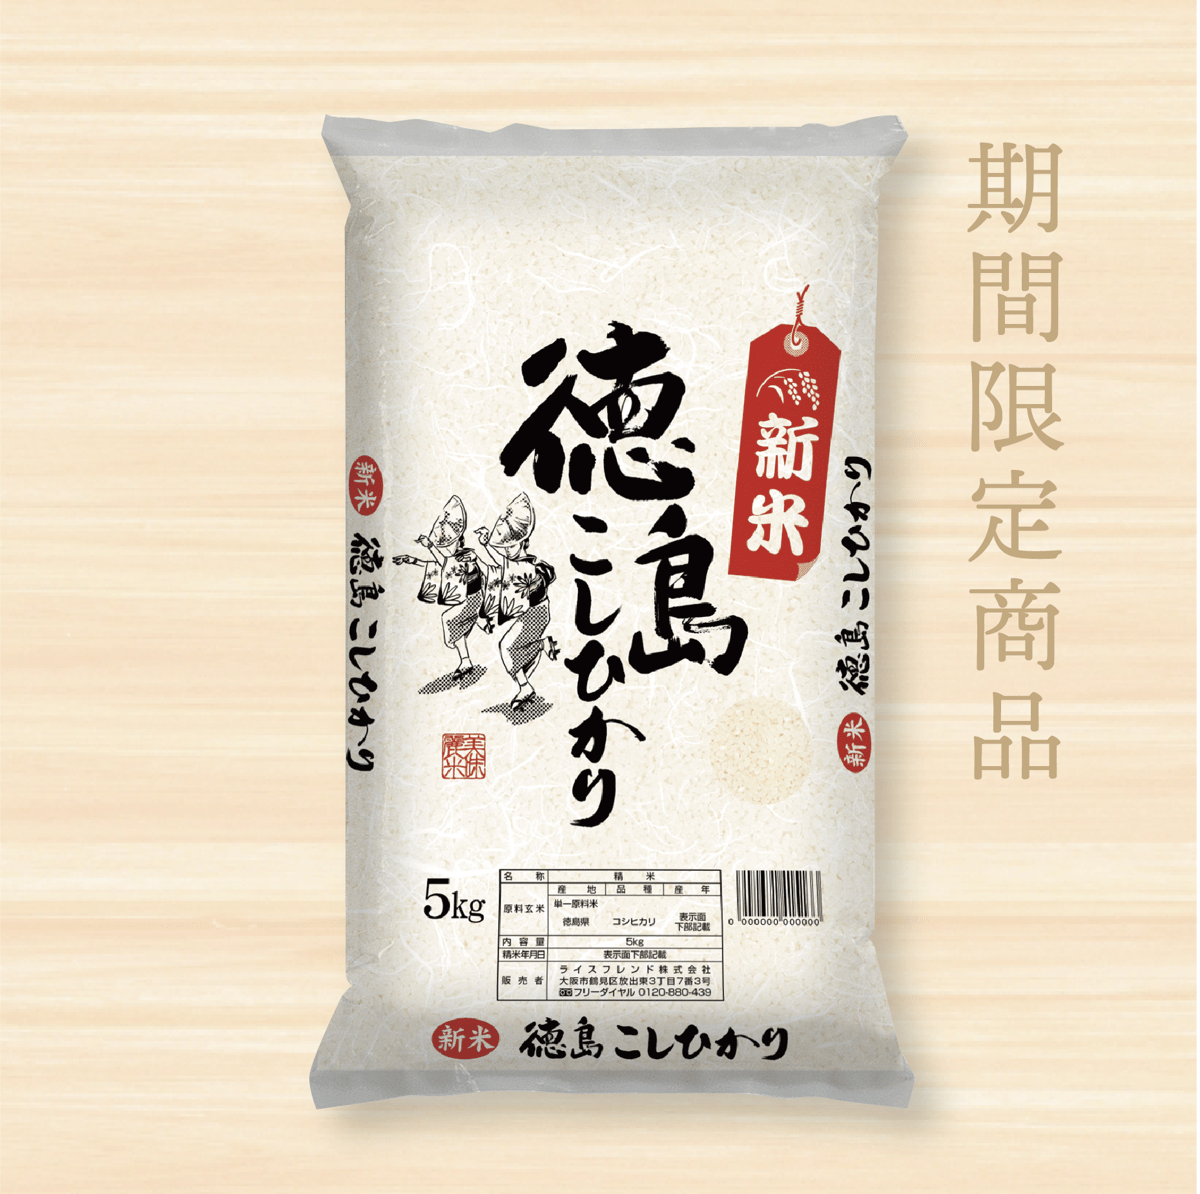 米/穀物専用　無農薬 精米 15kg(5kg×3)令和元年 徳島県産